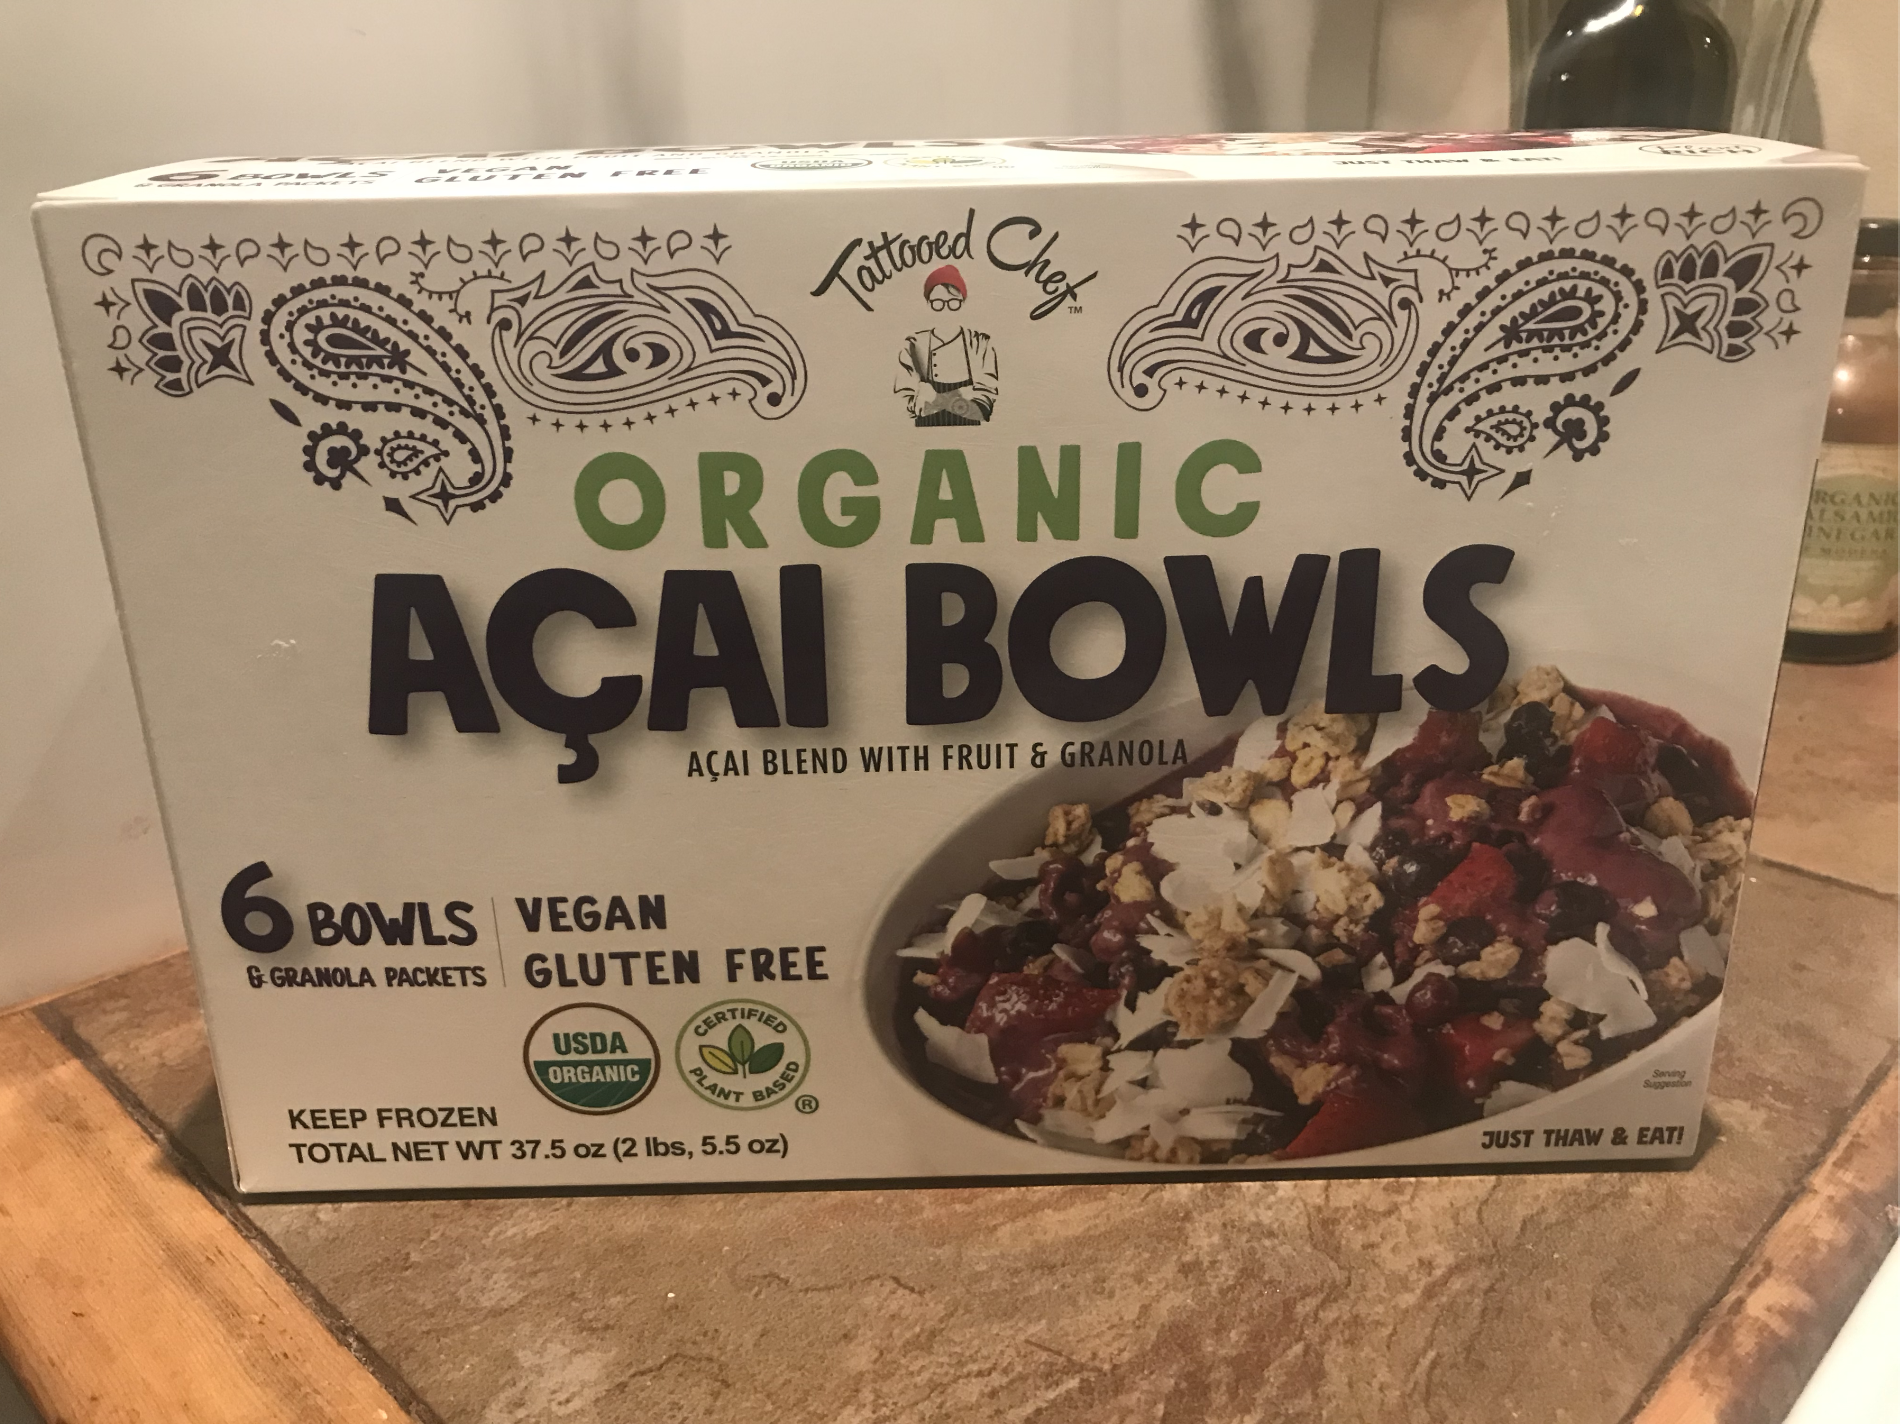 Organic Acai Bowls at Costco - A New Favorite - AisleofShame.com